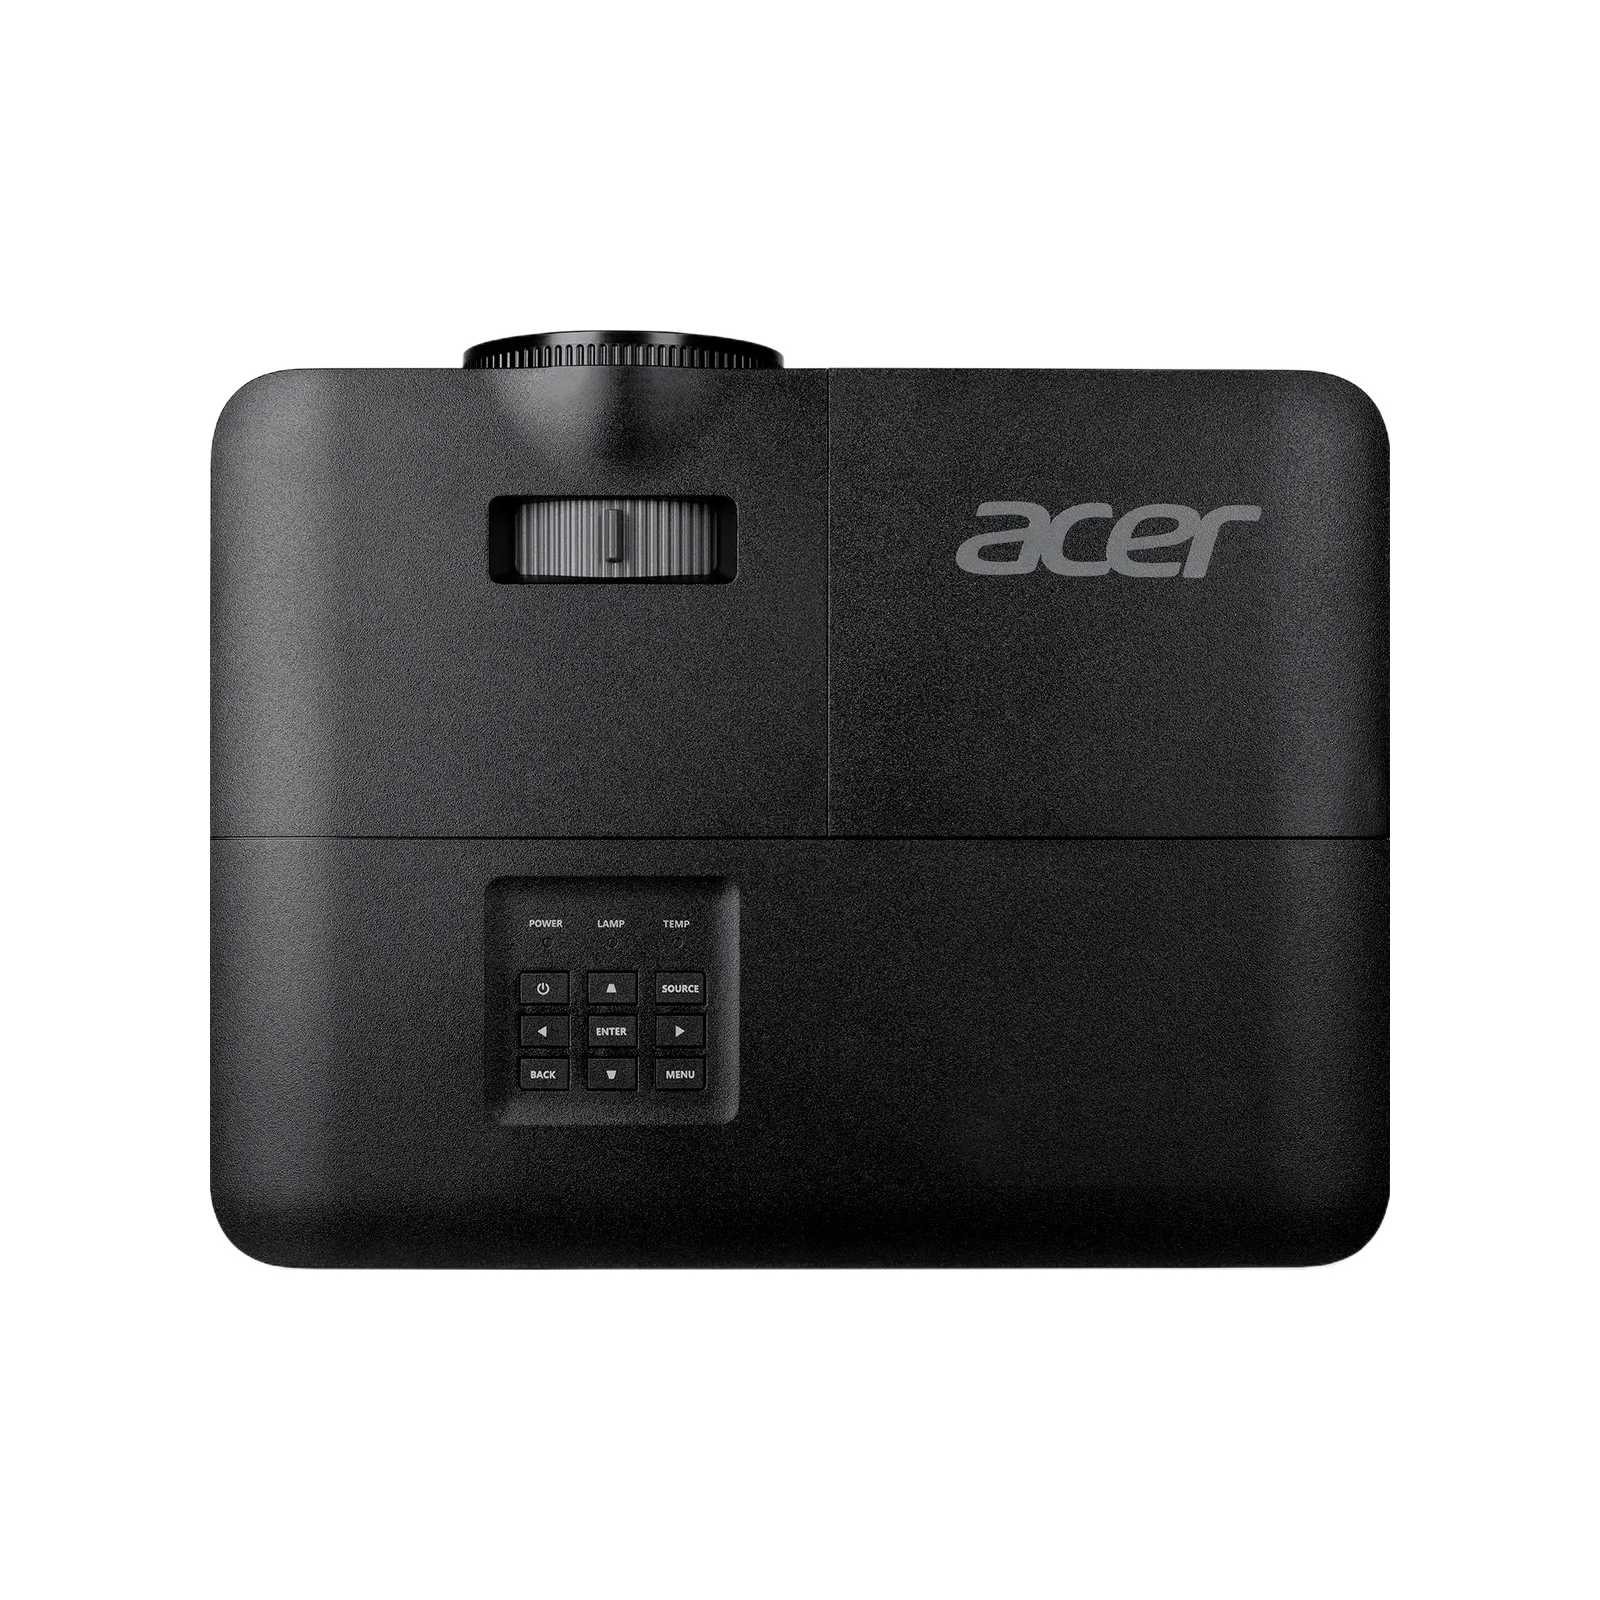 Проектор Acer X1228Hn (MR.JX111.001) изображение 5